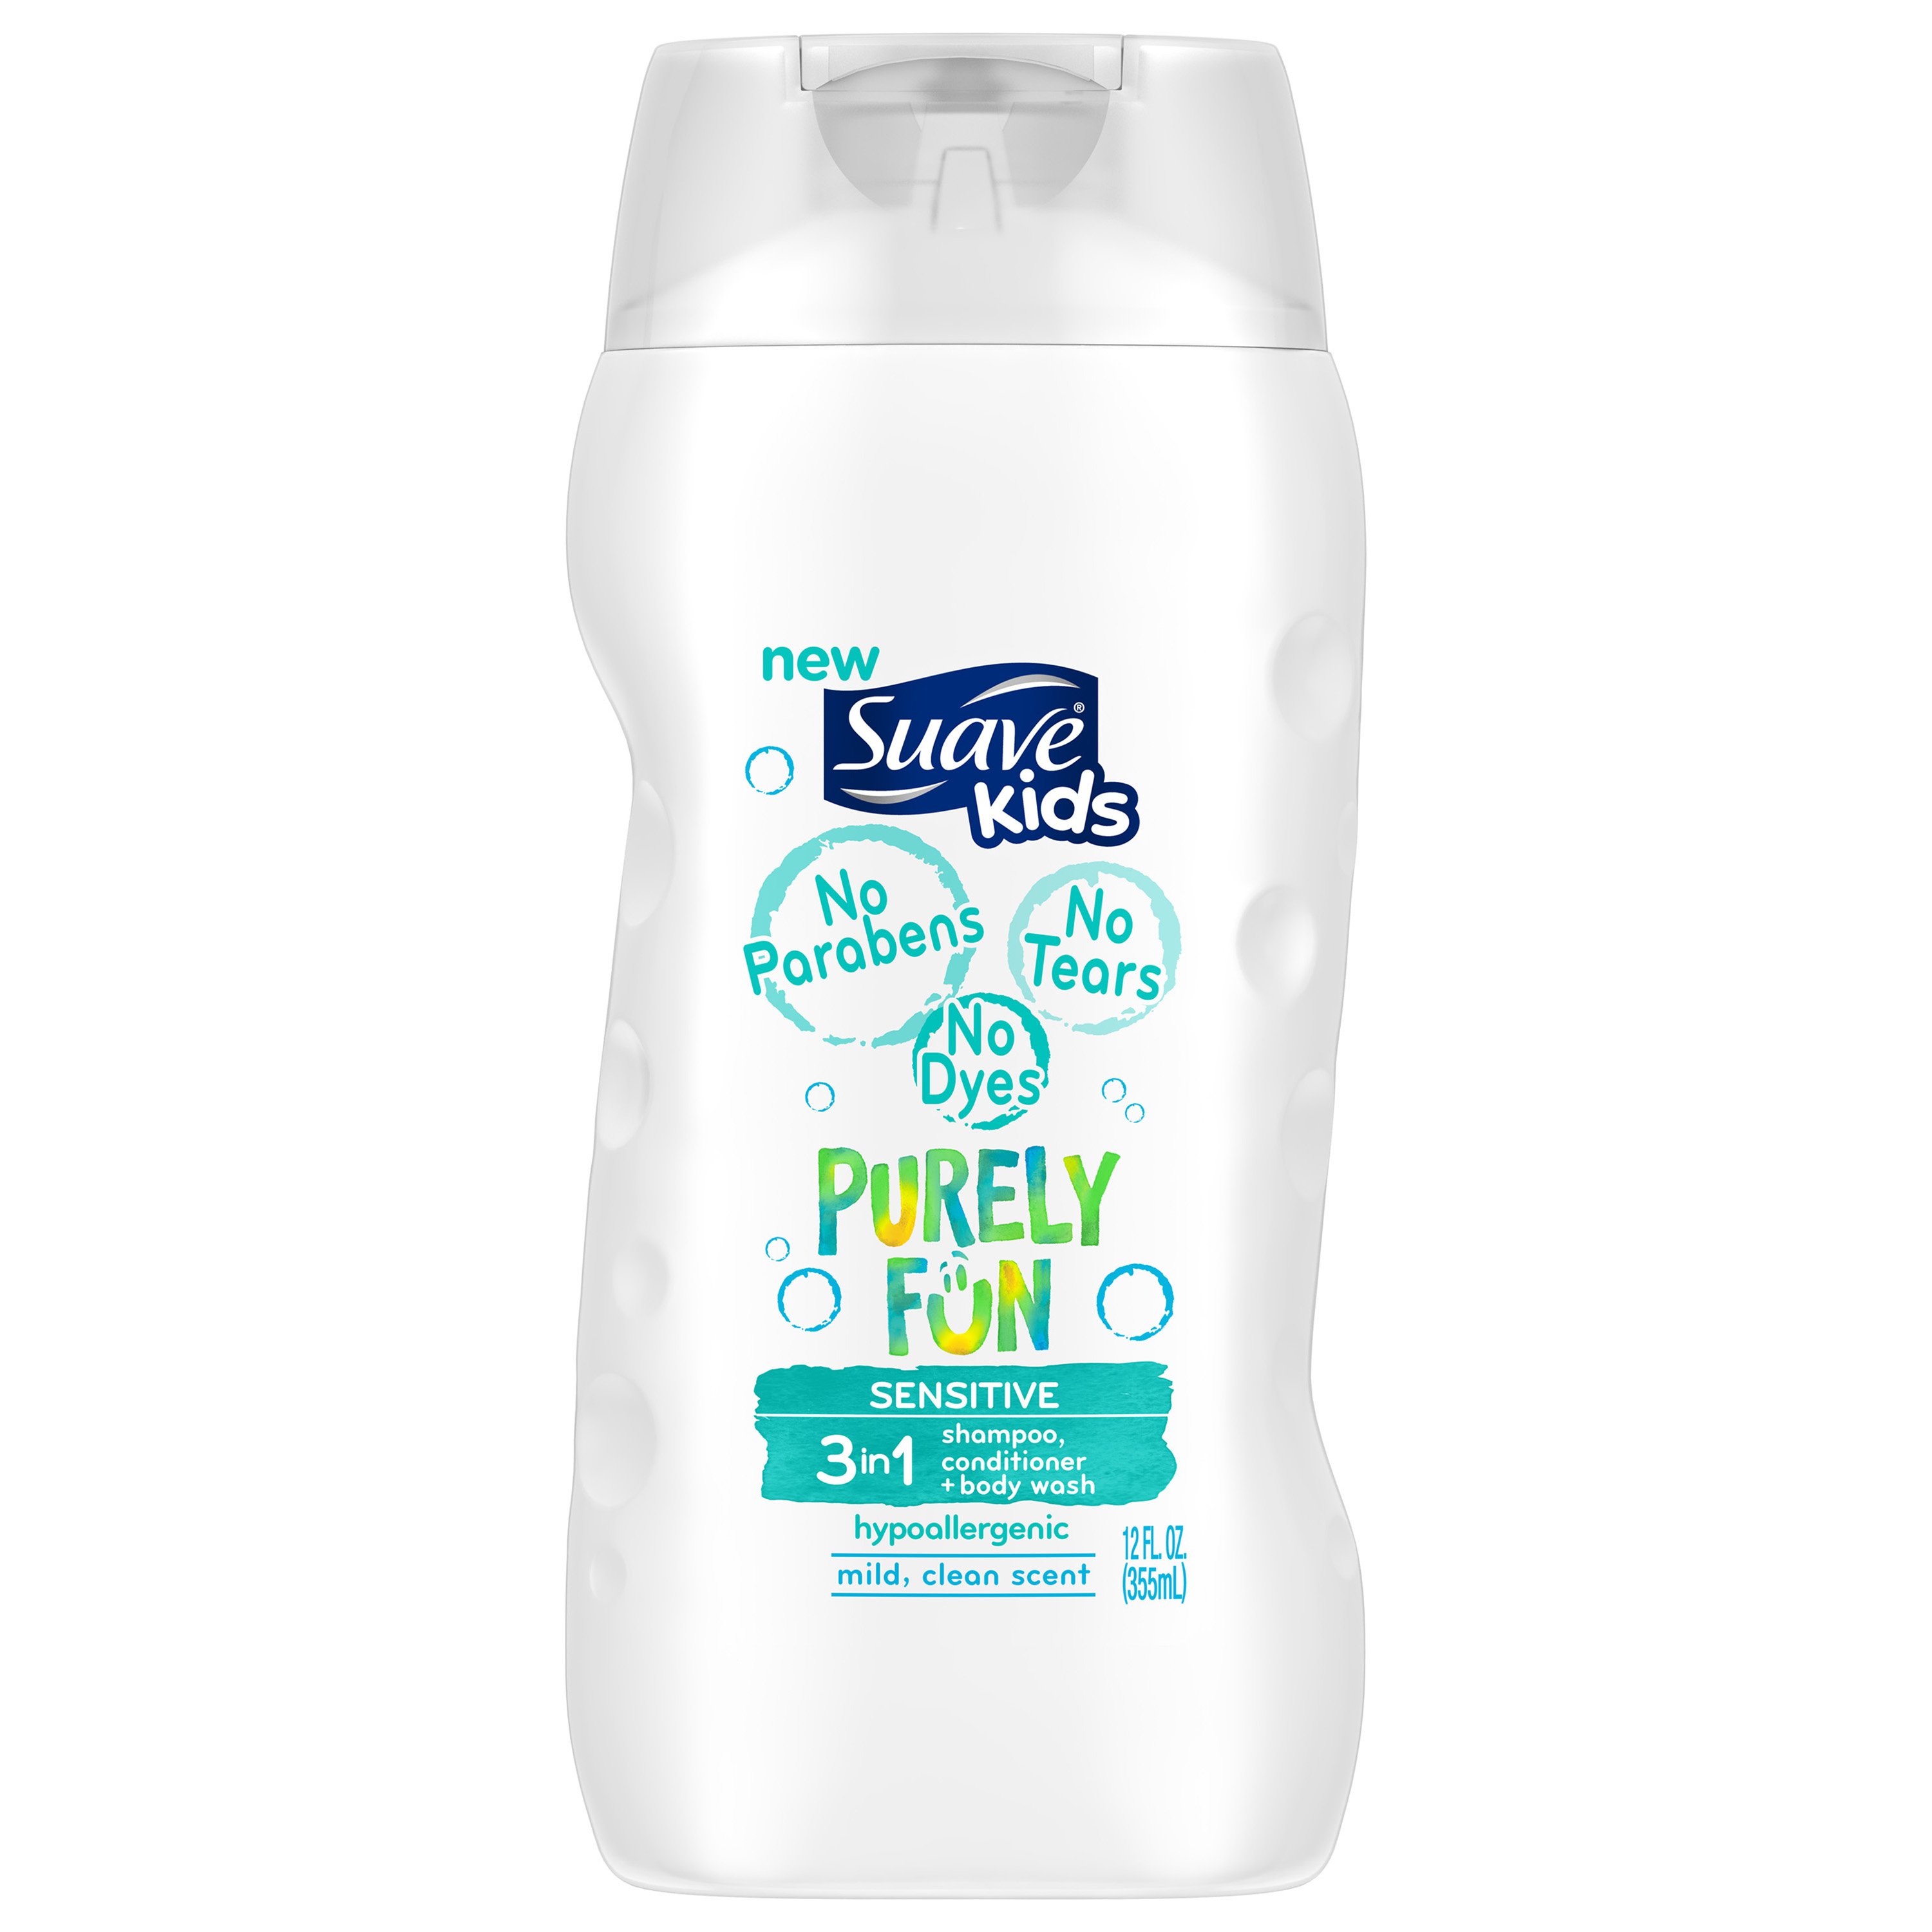 Suave Kids Purely Fun Sensitive 3 in 1 Shampoo Conditioner Body Wash - Shop  Health & Skin Care at H-E-B